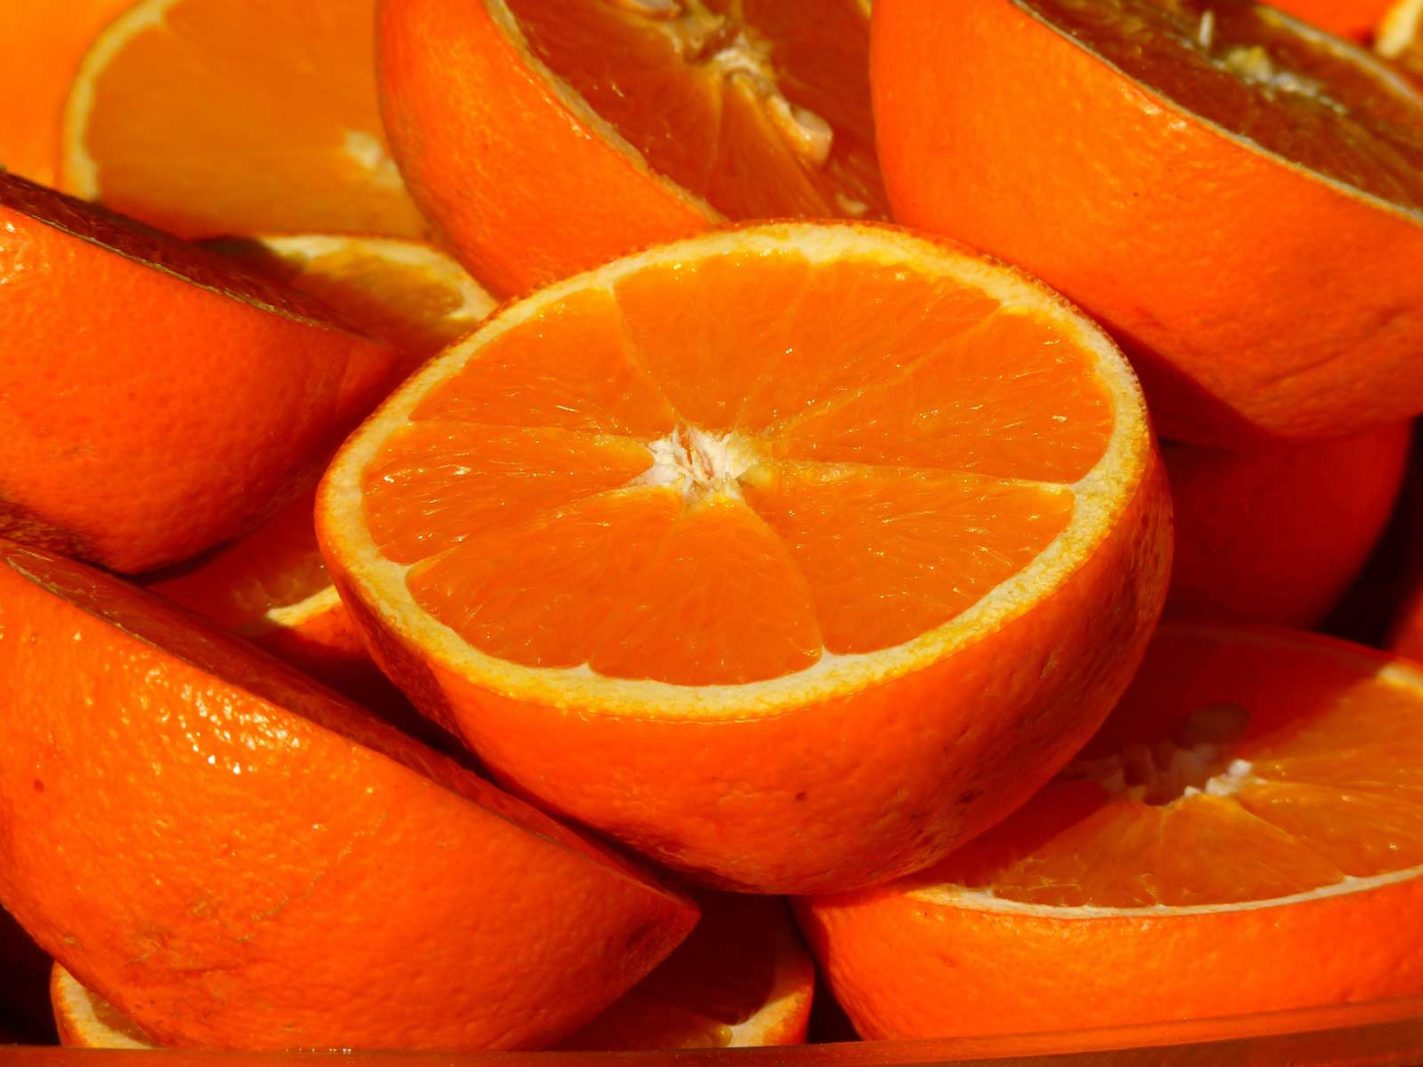 florida facts oranges